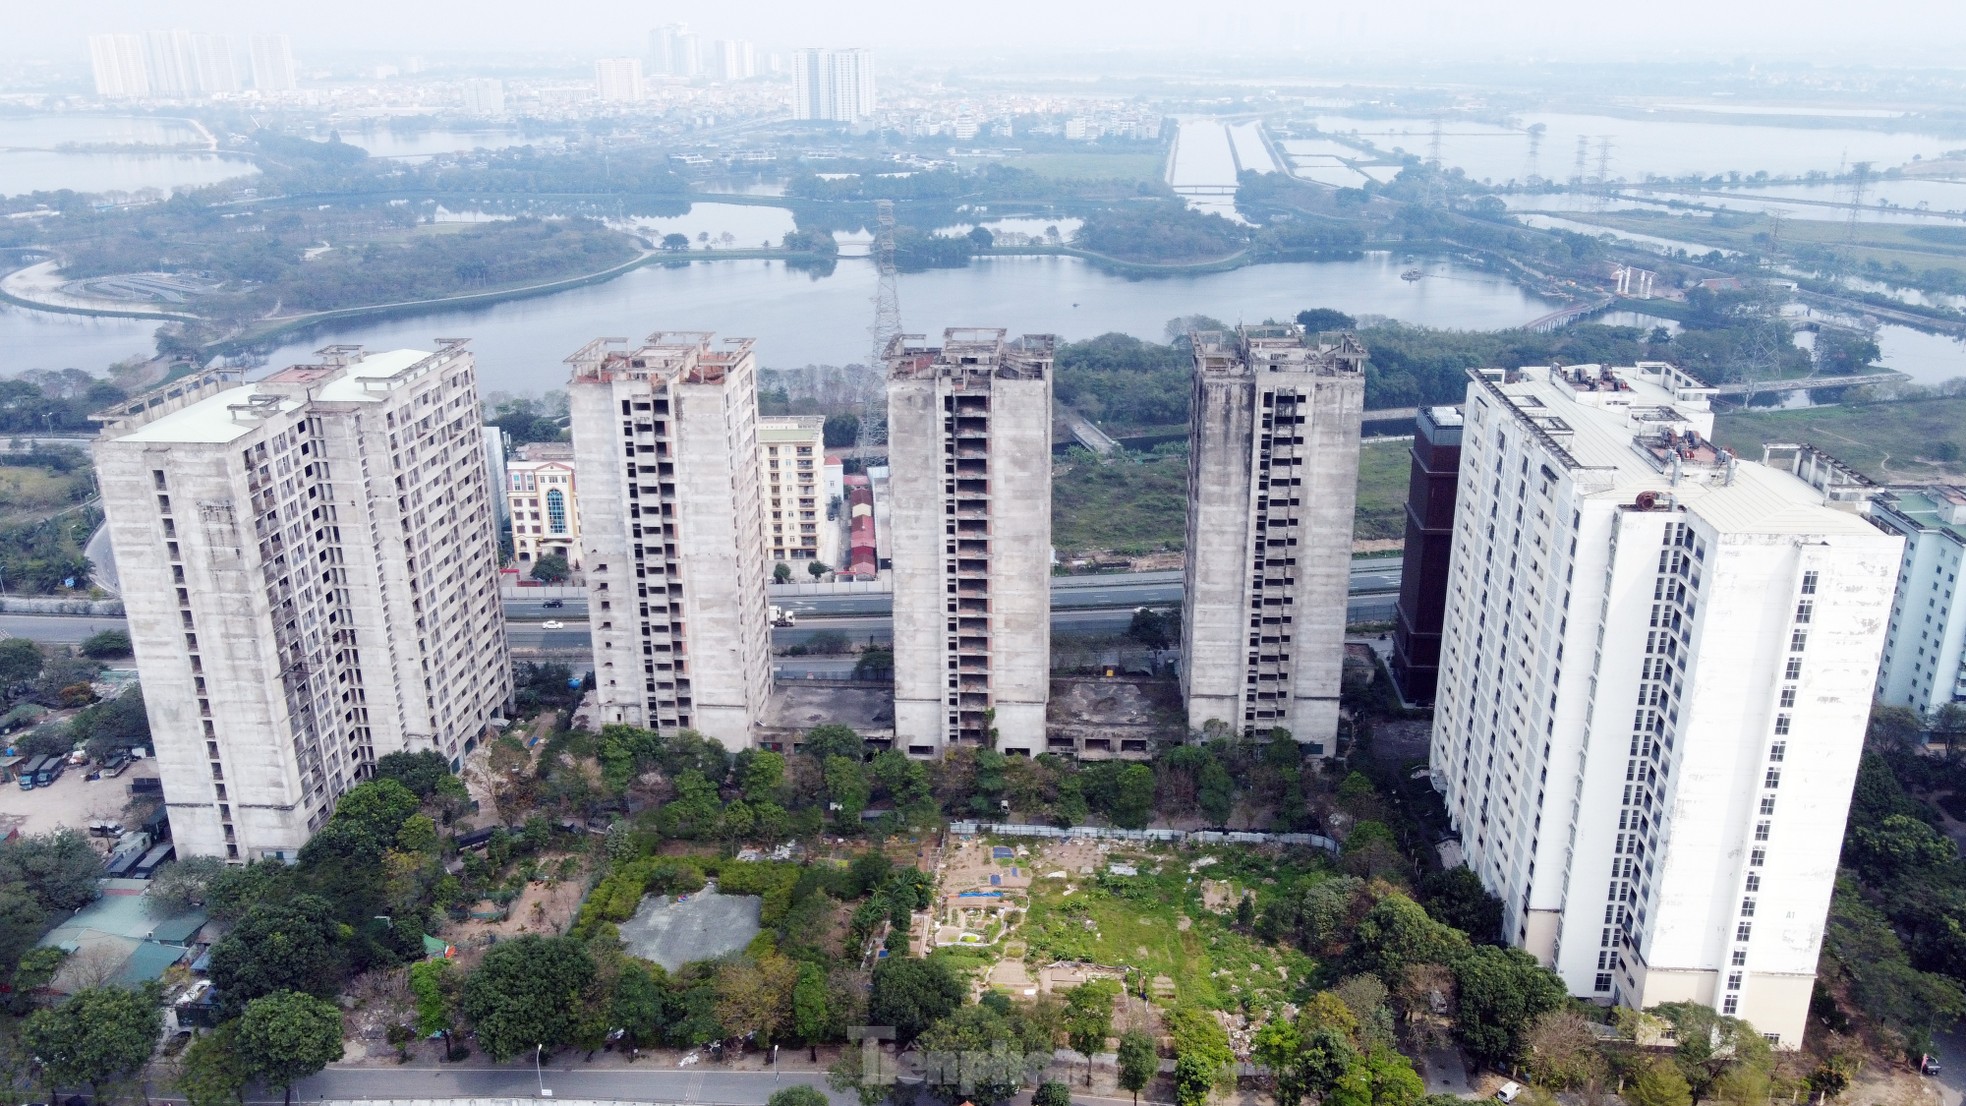 Khu ký túc xá 'nghìn tỷ' bỏ hoang sắp chuyển đổi làm nhà ở xã hội ở Hà Nội - Ảnh 2.